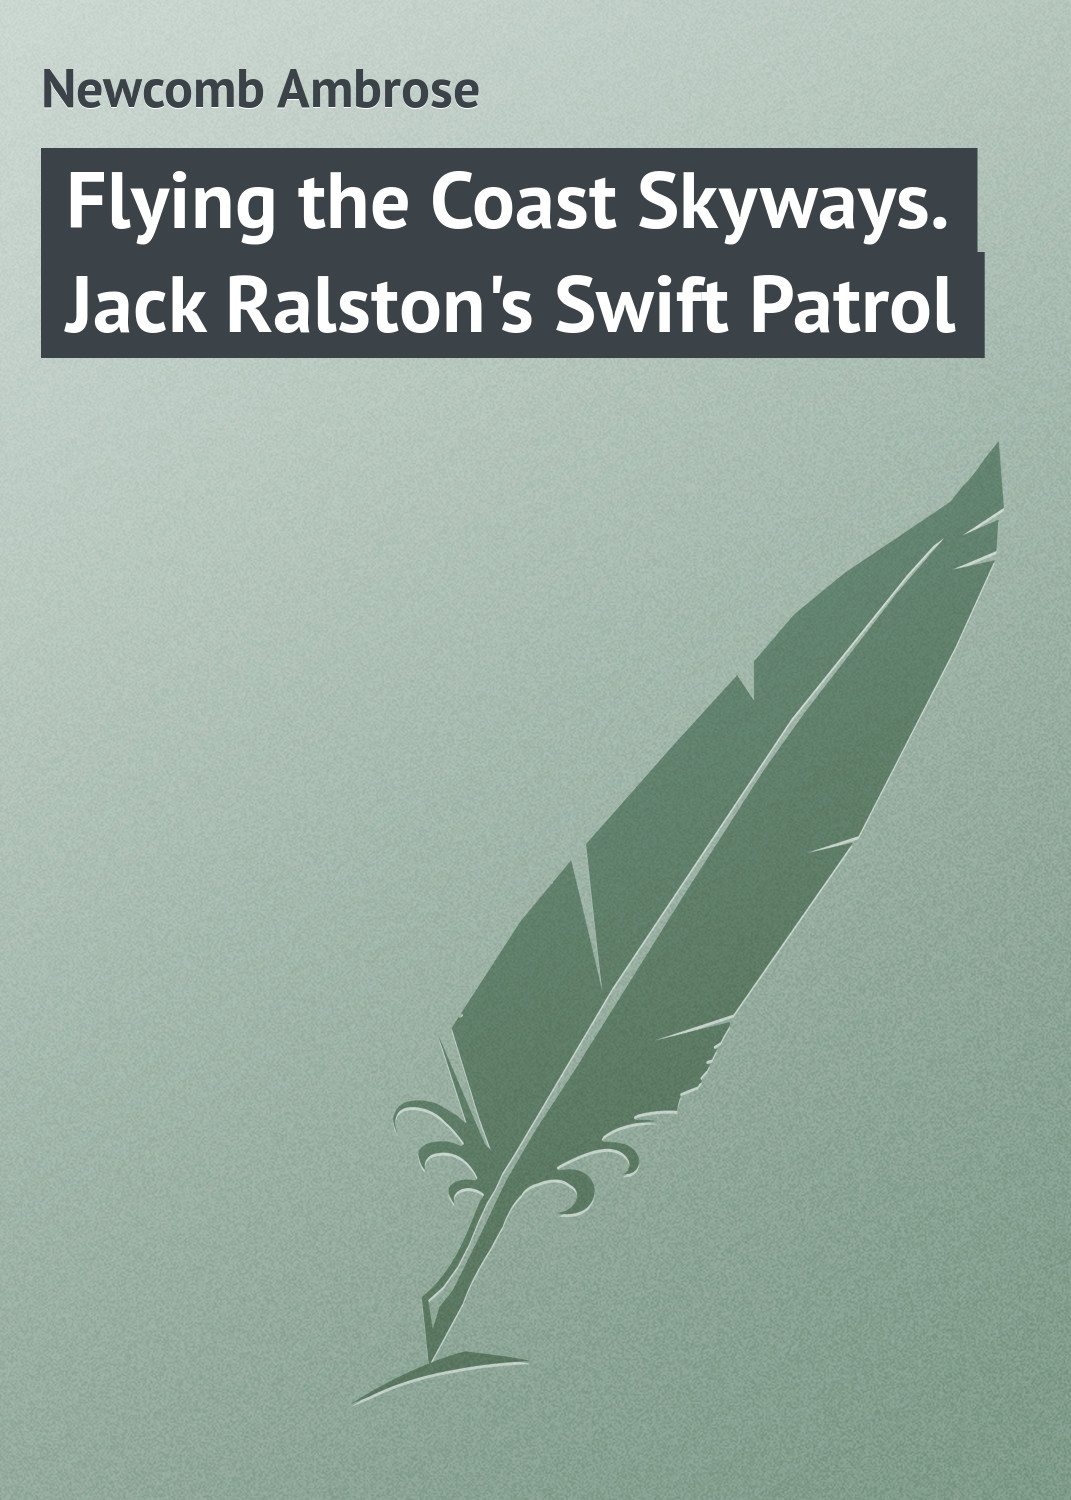 Книга Flying the Coast Skyways. Jack Ralston's Swift Patrol из серии , созданная Ambrose Newcomb, может относится к жанру Иностранные языки, Зарубежная классика. Стоимость электронной книги Flying the Coast Skyways. Jack Ralston's Swift Patrol с идентификатором 23162683 составляет 5.99 руб.